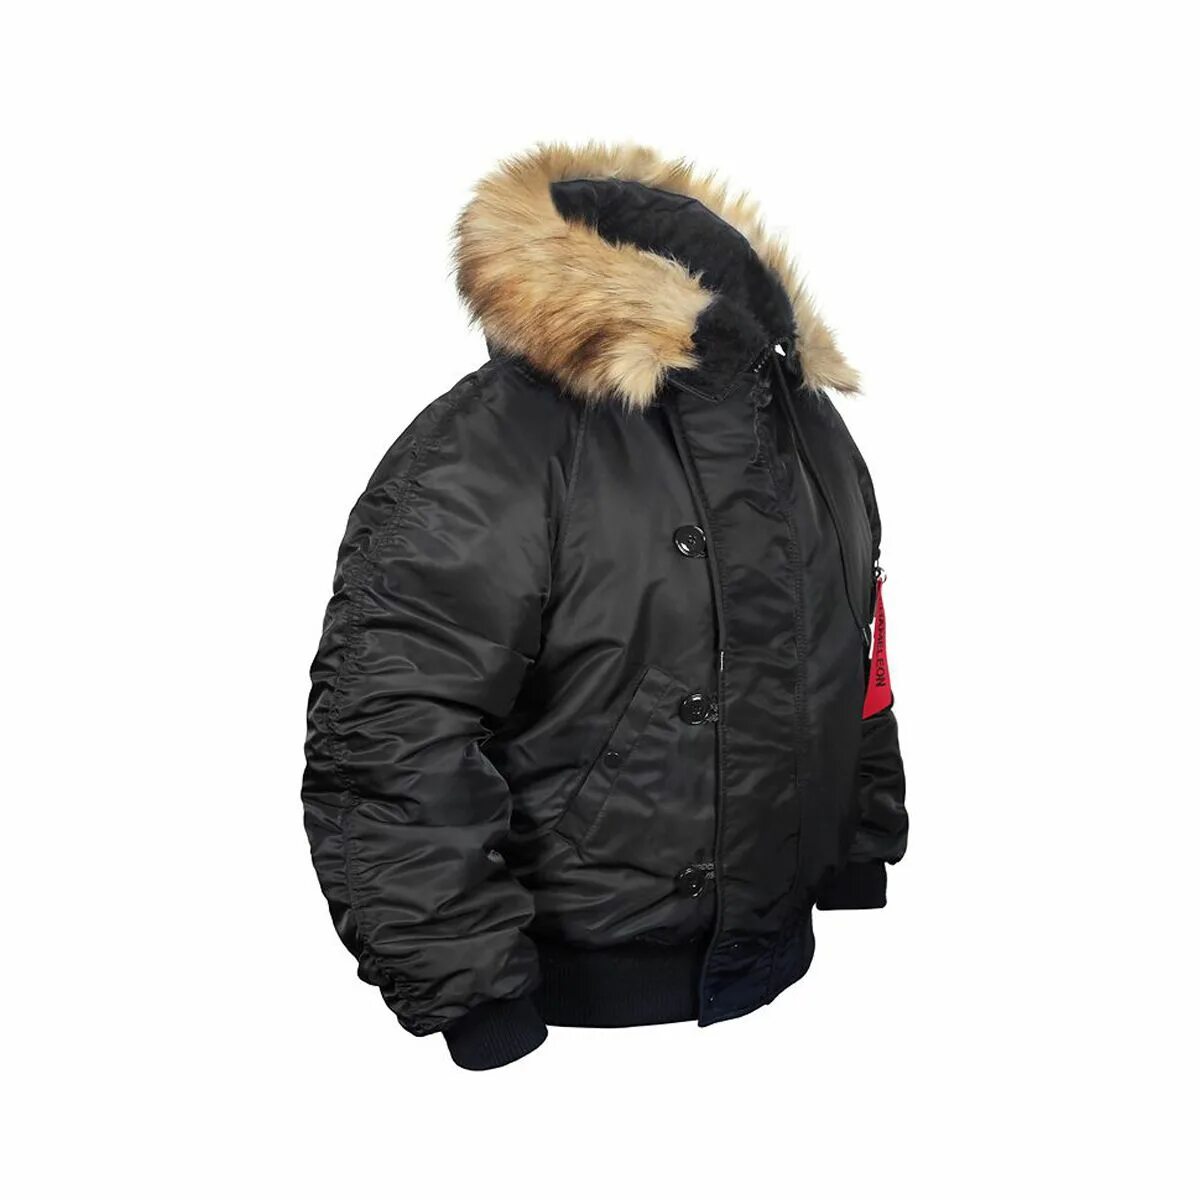 Аляска б. Куртка Аляска укороченная n-2b. Куртка Аляска Nordland. Куртка Милтек Аляска мужская. Куртка Аляска укороченная n-2b Black.